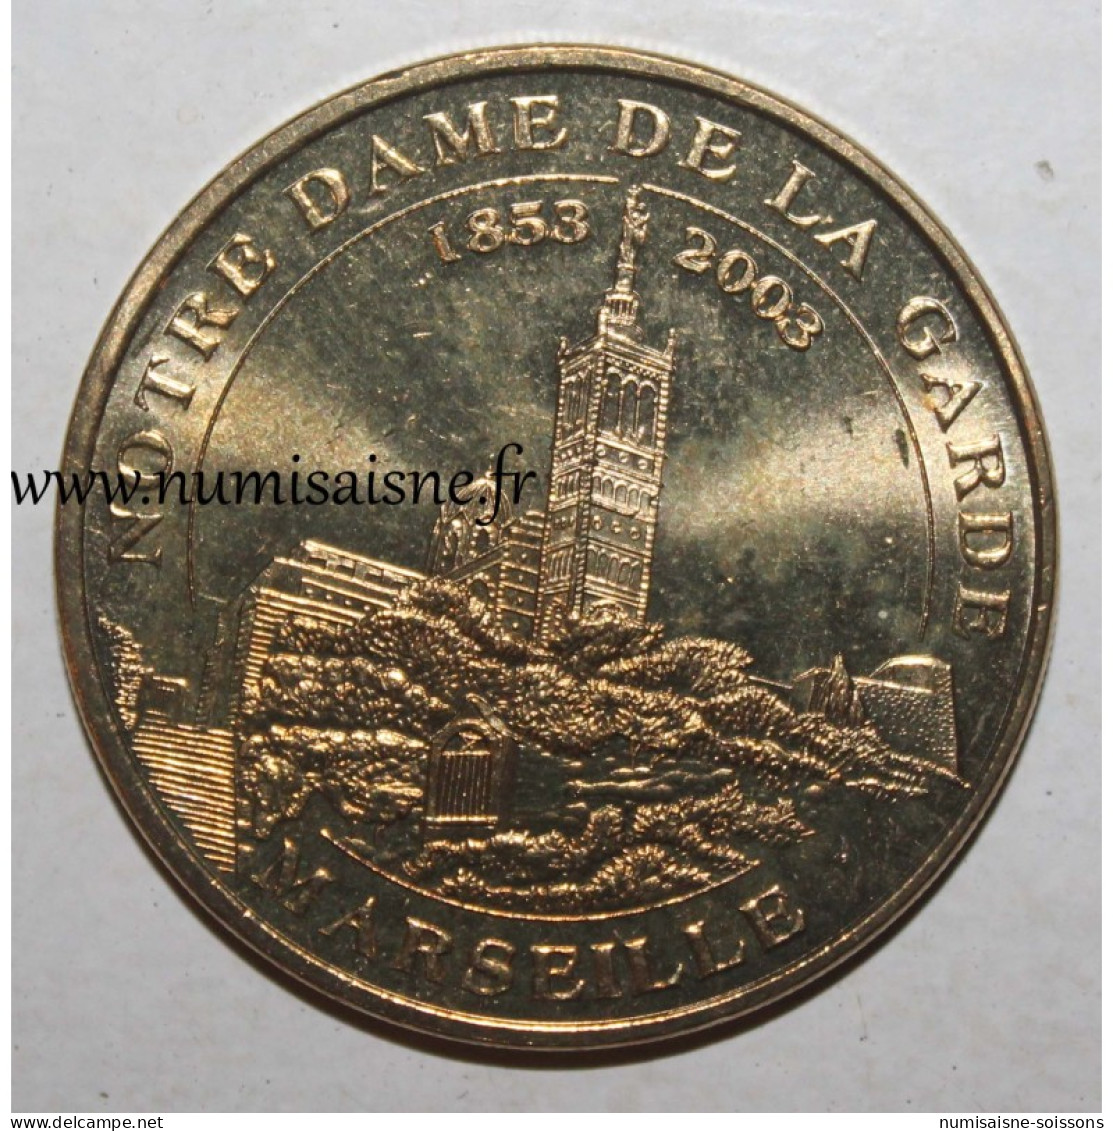 13 - MARSEILLE - BASILIQUE NOTRE DAME DE LA GARDE - Monnaie De Paris - 2010 - 2010